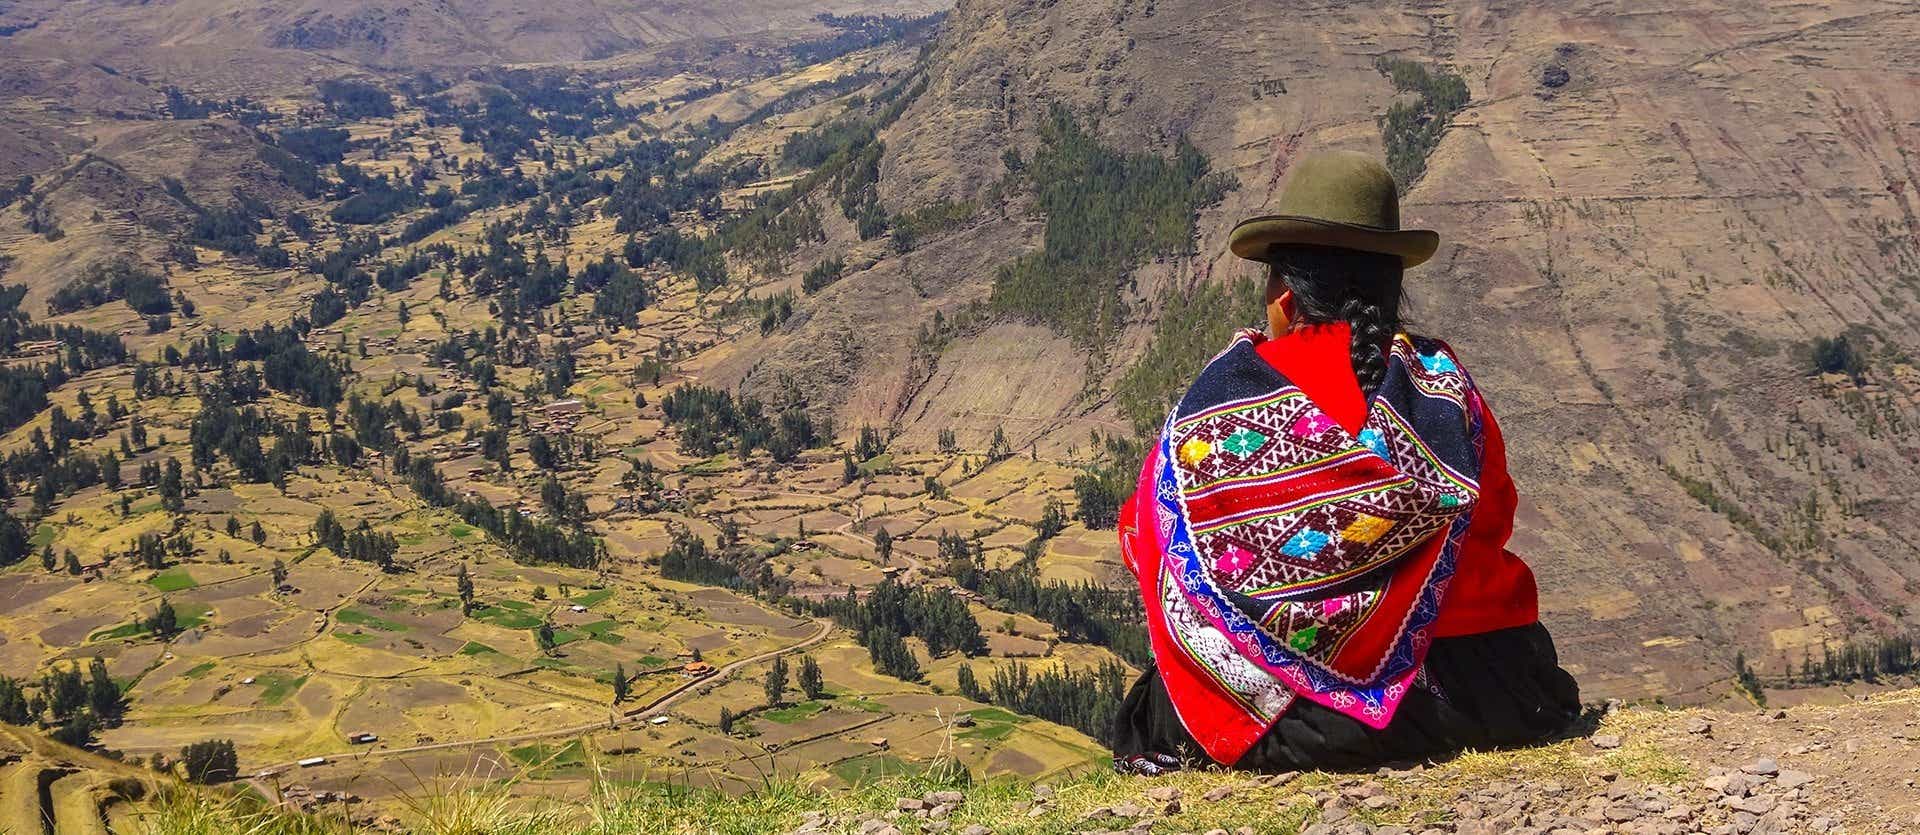 Quechua Woman <span class="iconos separador"></span> Cuzco <span class="iconos separador"></span> Peru